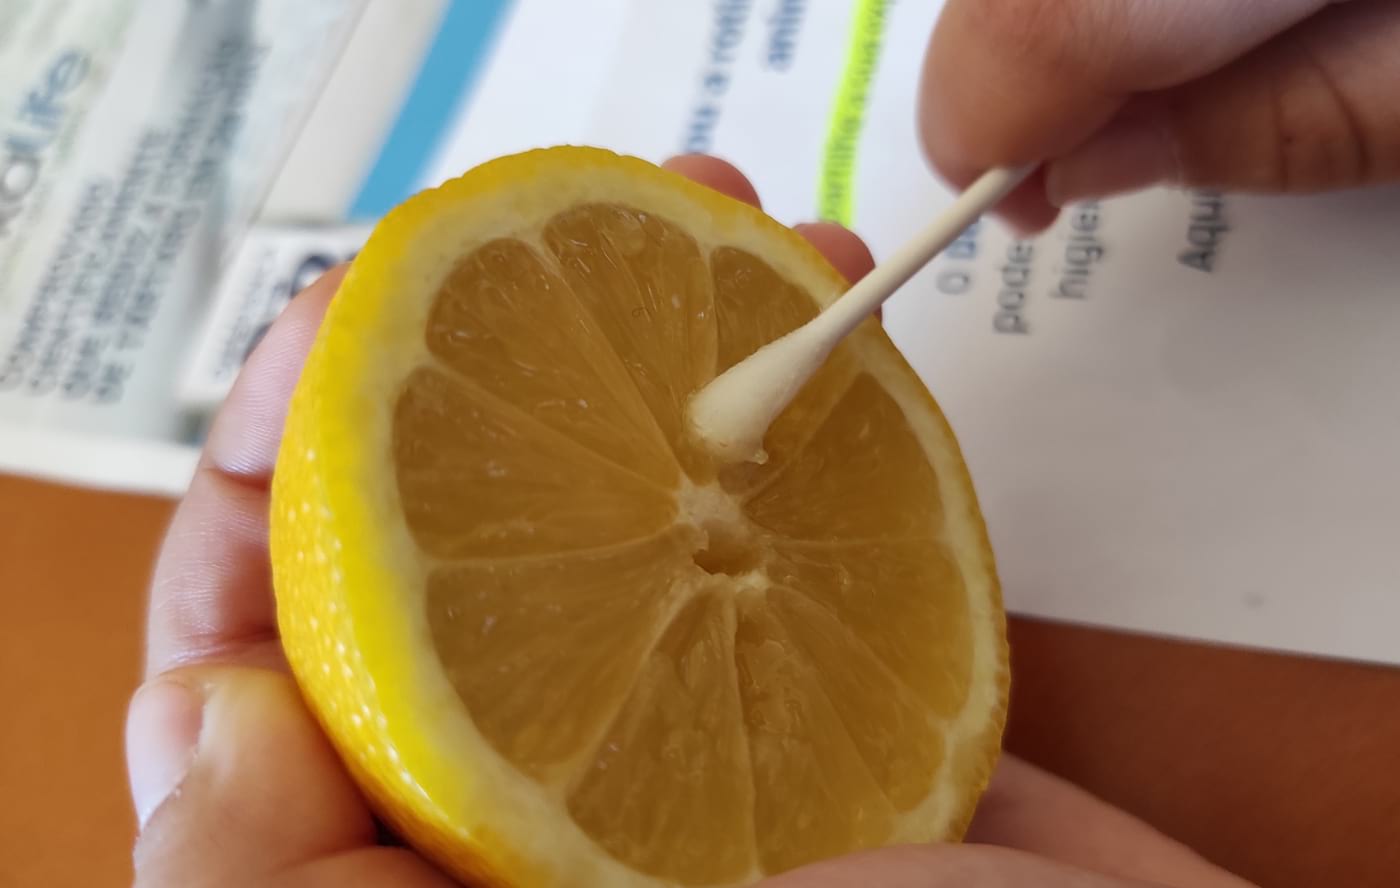 Cotonete impregnada com limão